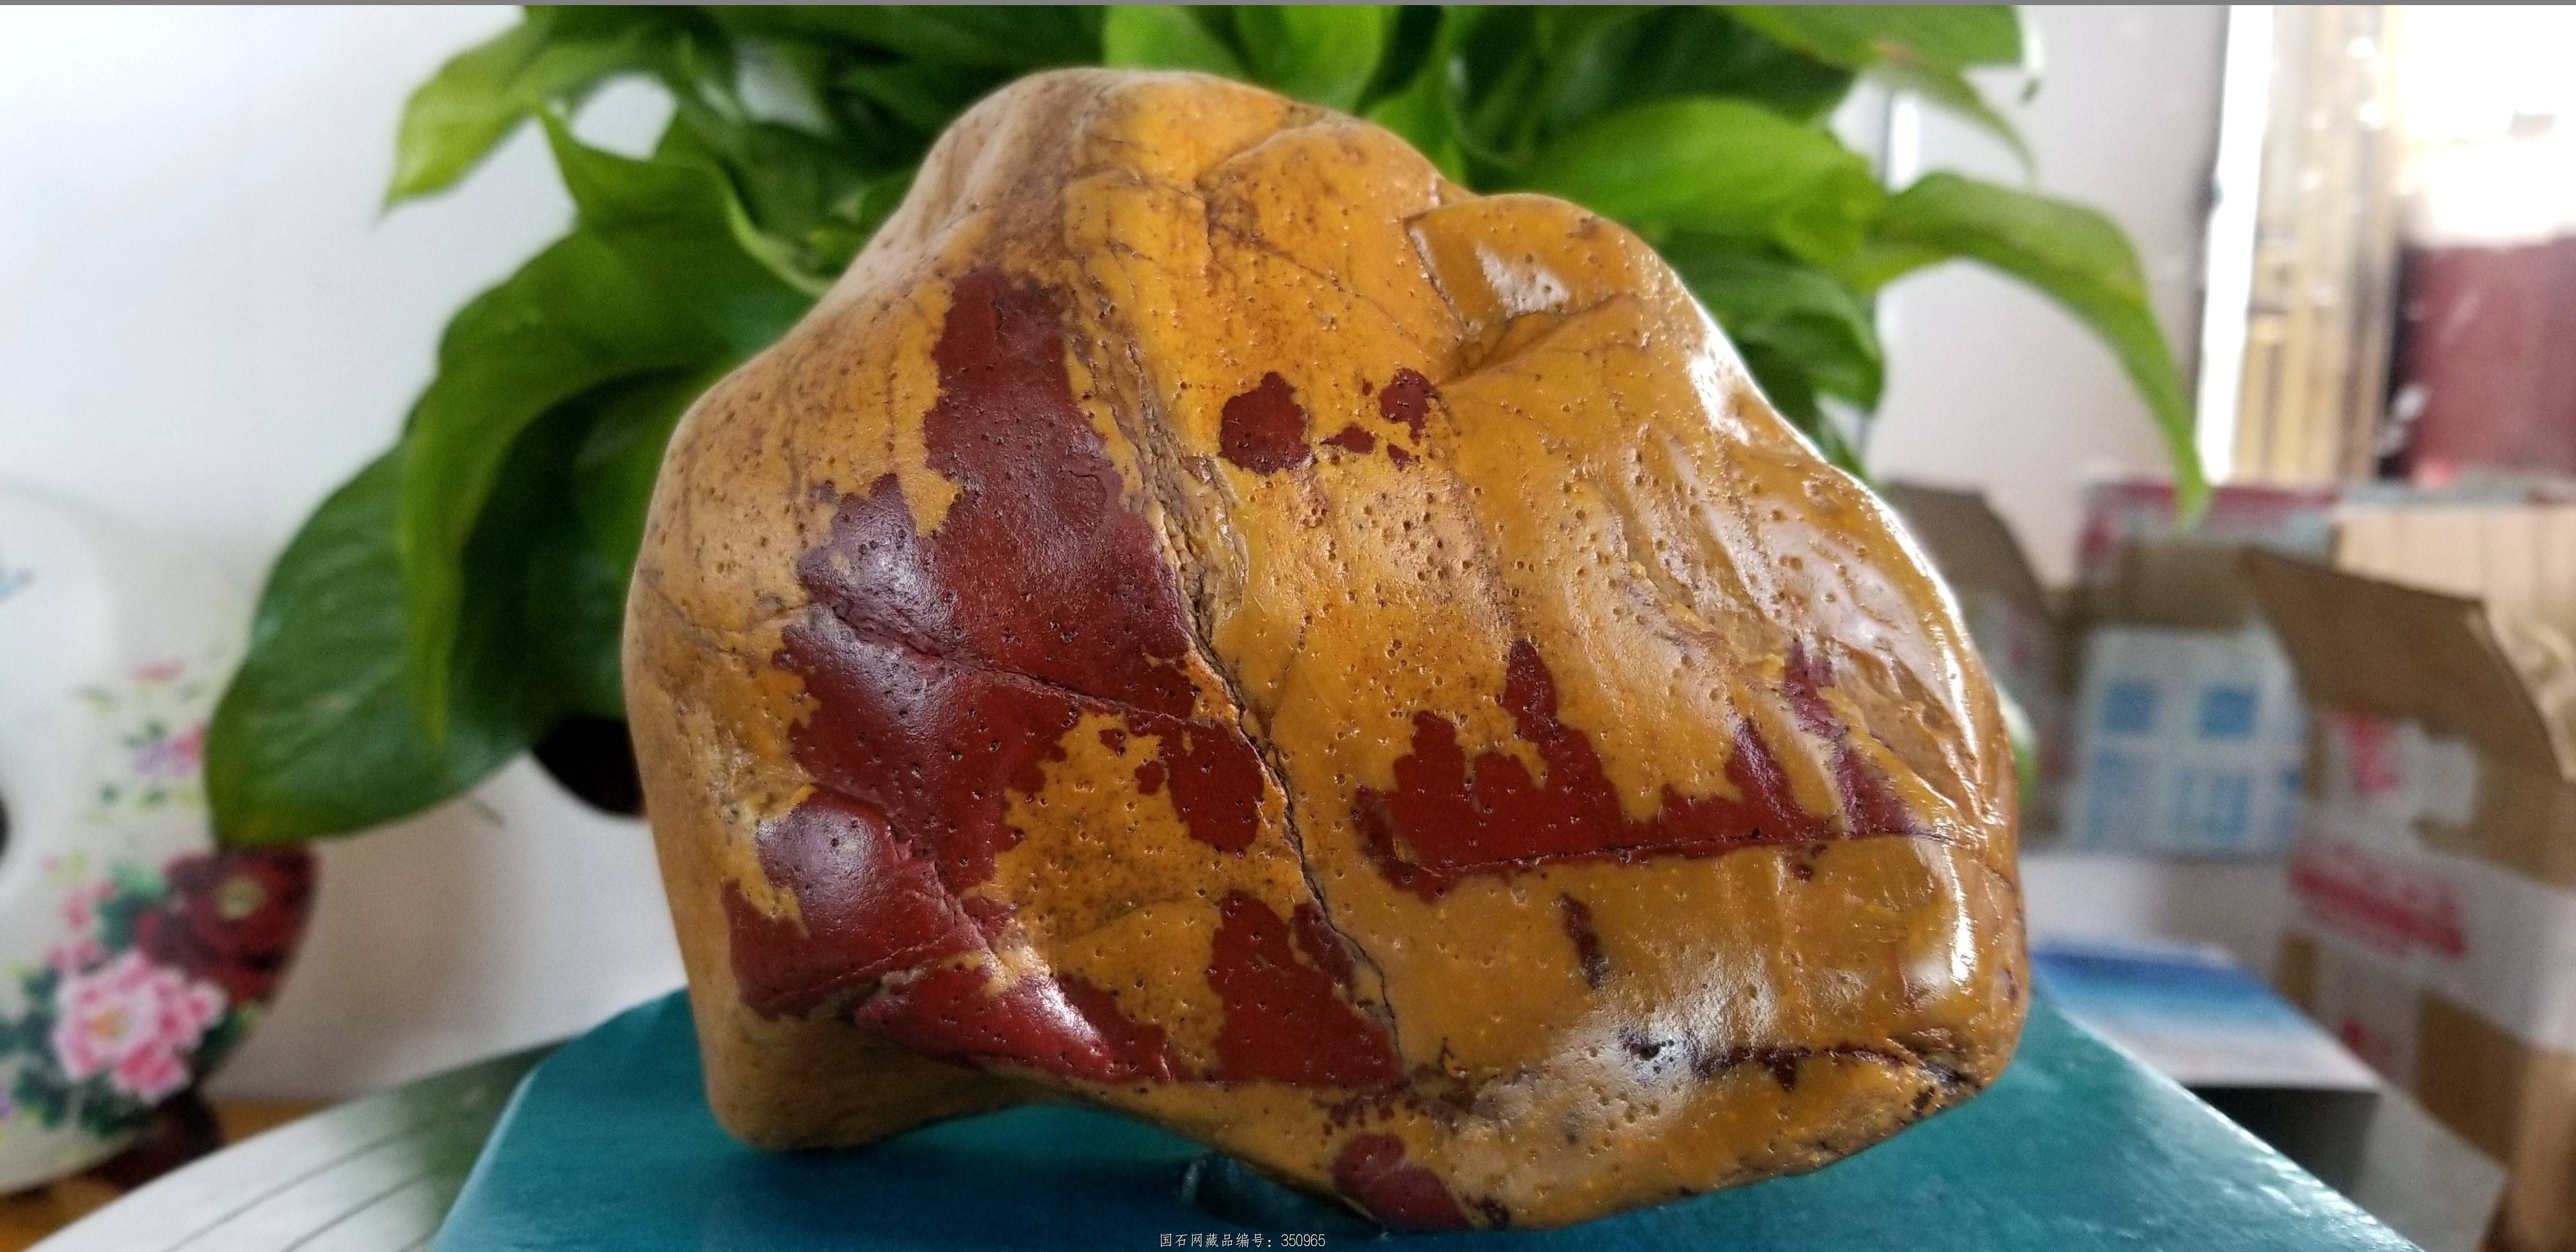 江西石头的种类及图片图片